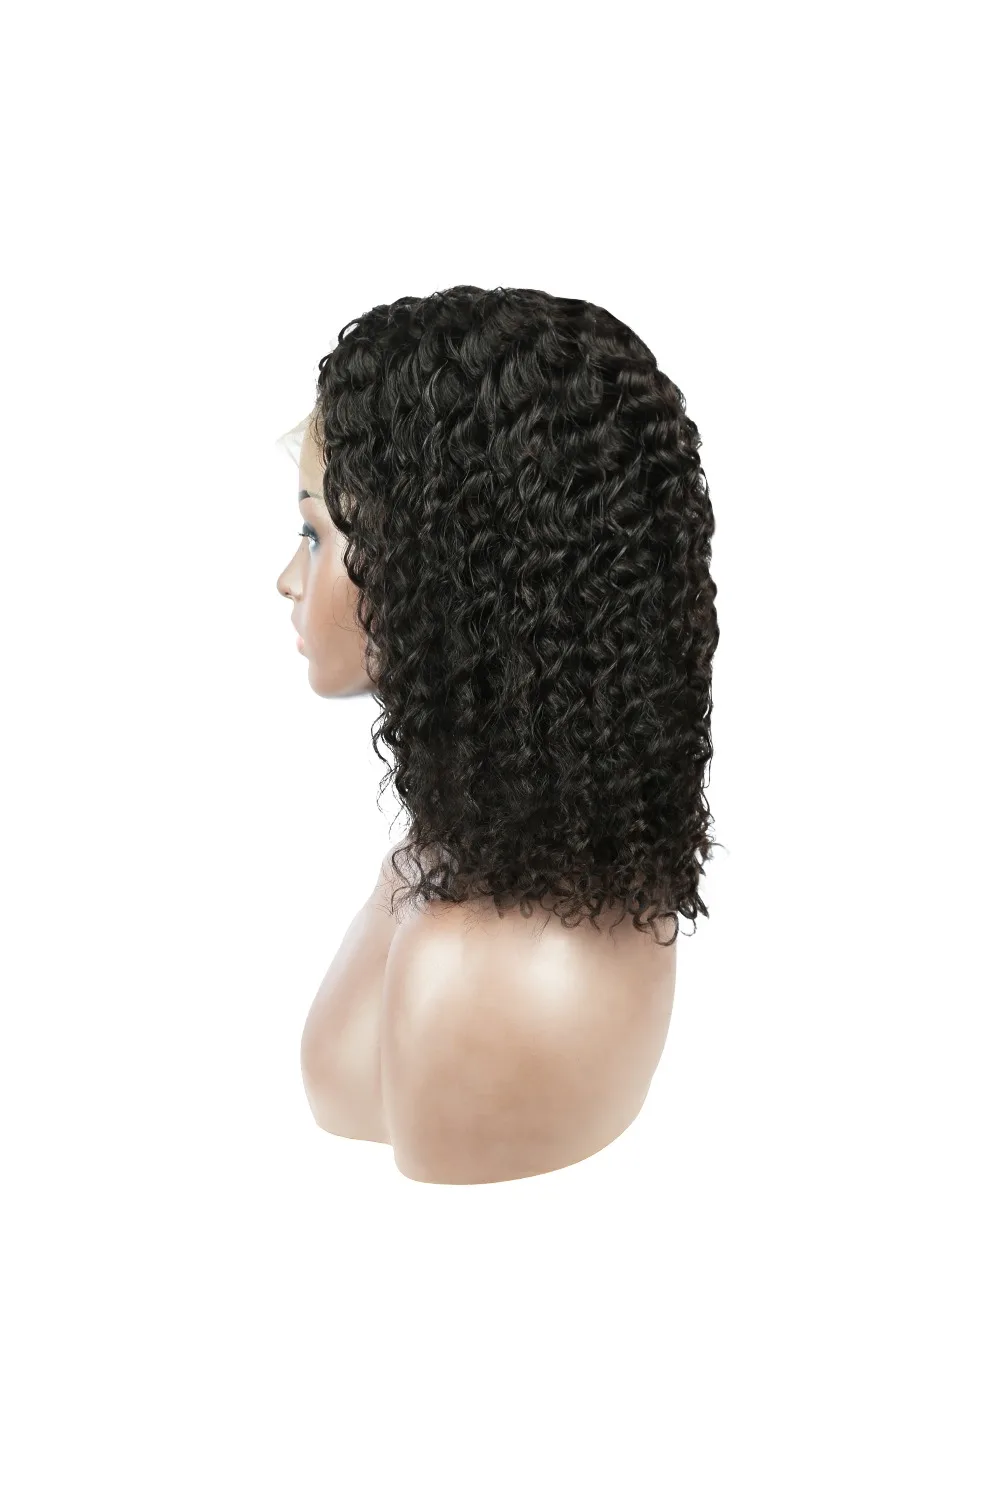 BeQueen глубокая волна короткие человеческие волосы парик блондинка 613 человеческие волосы парик малазийские волосы боб парик для черных женщин